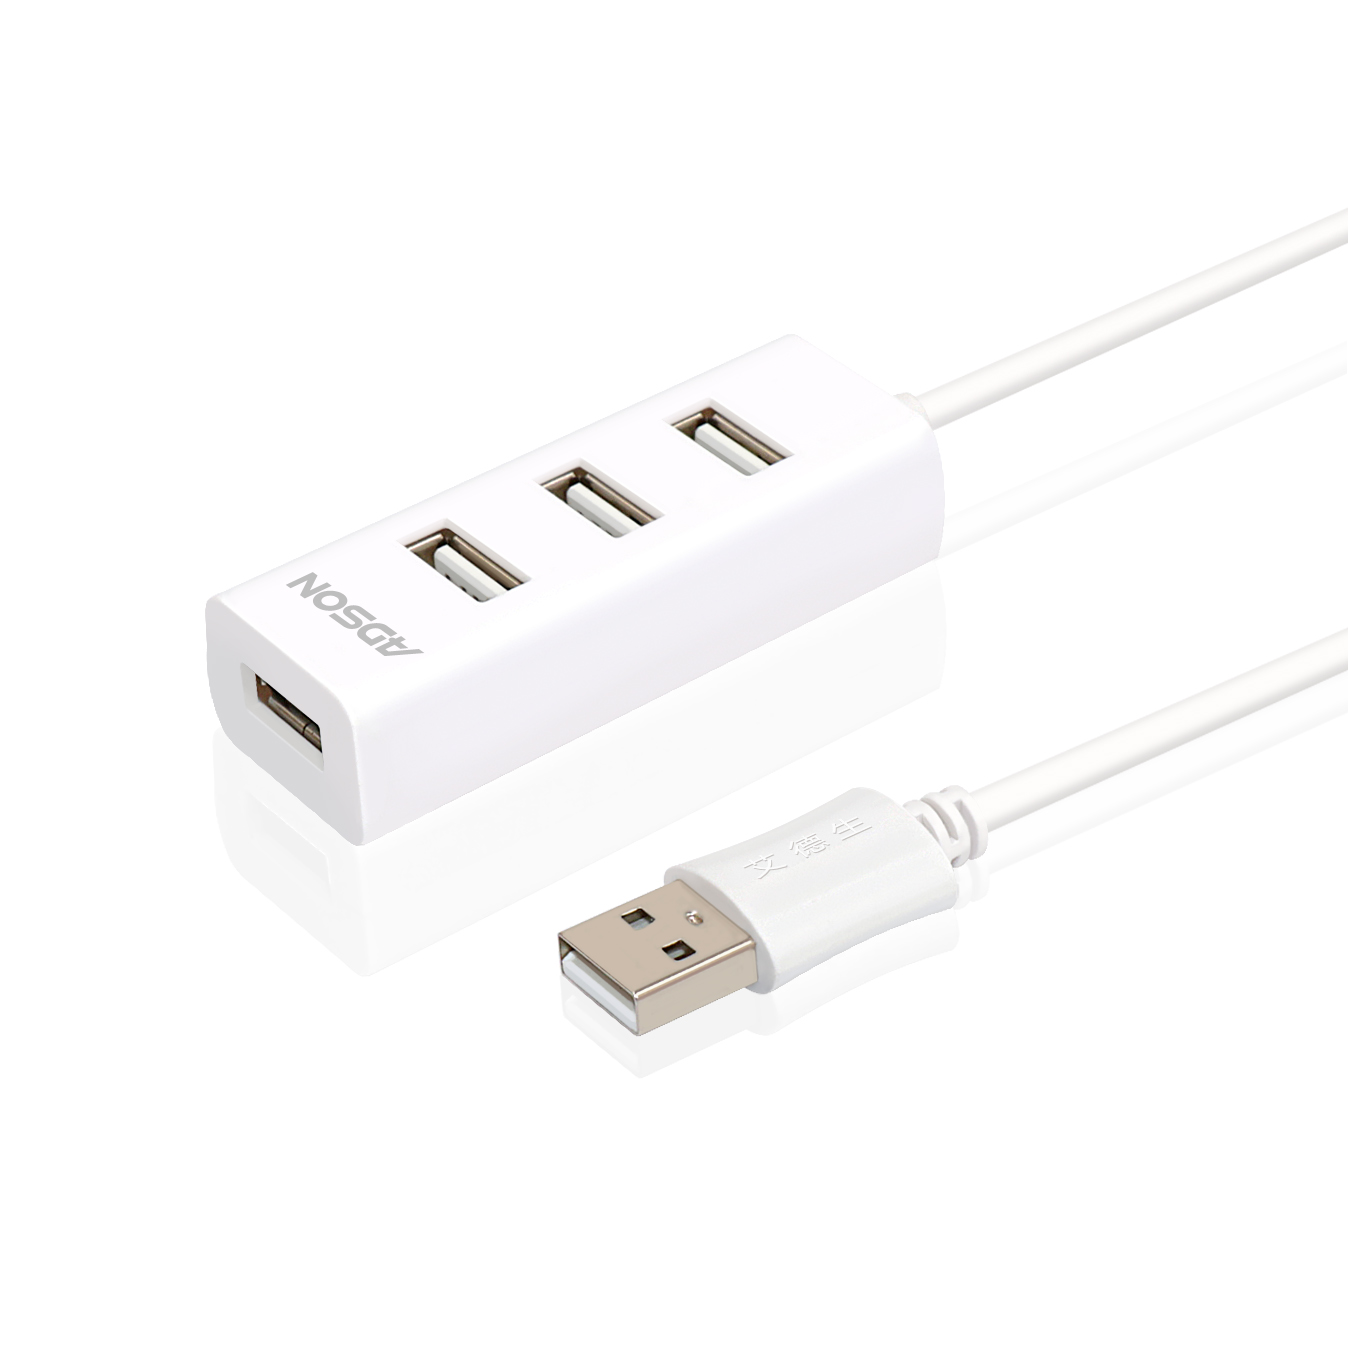 USB2.0四口集线器-白色ABS(仅传输数据)-26428